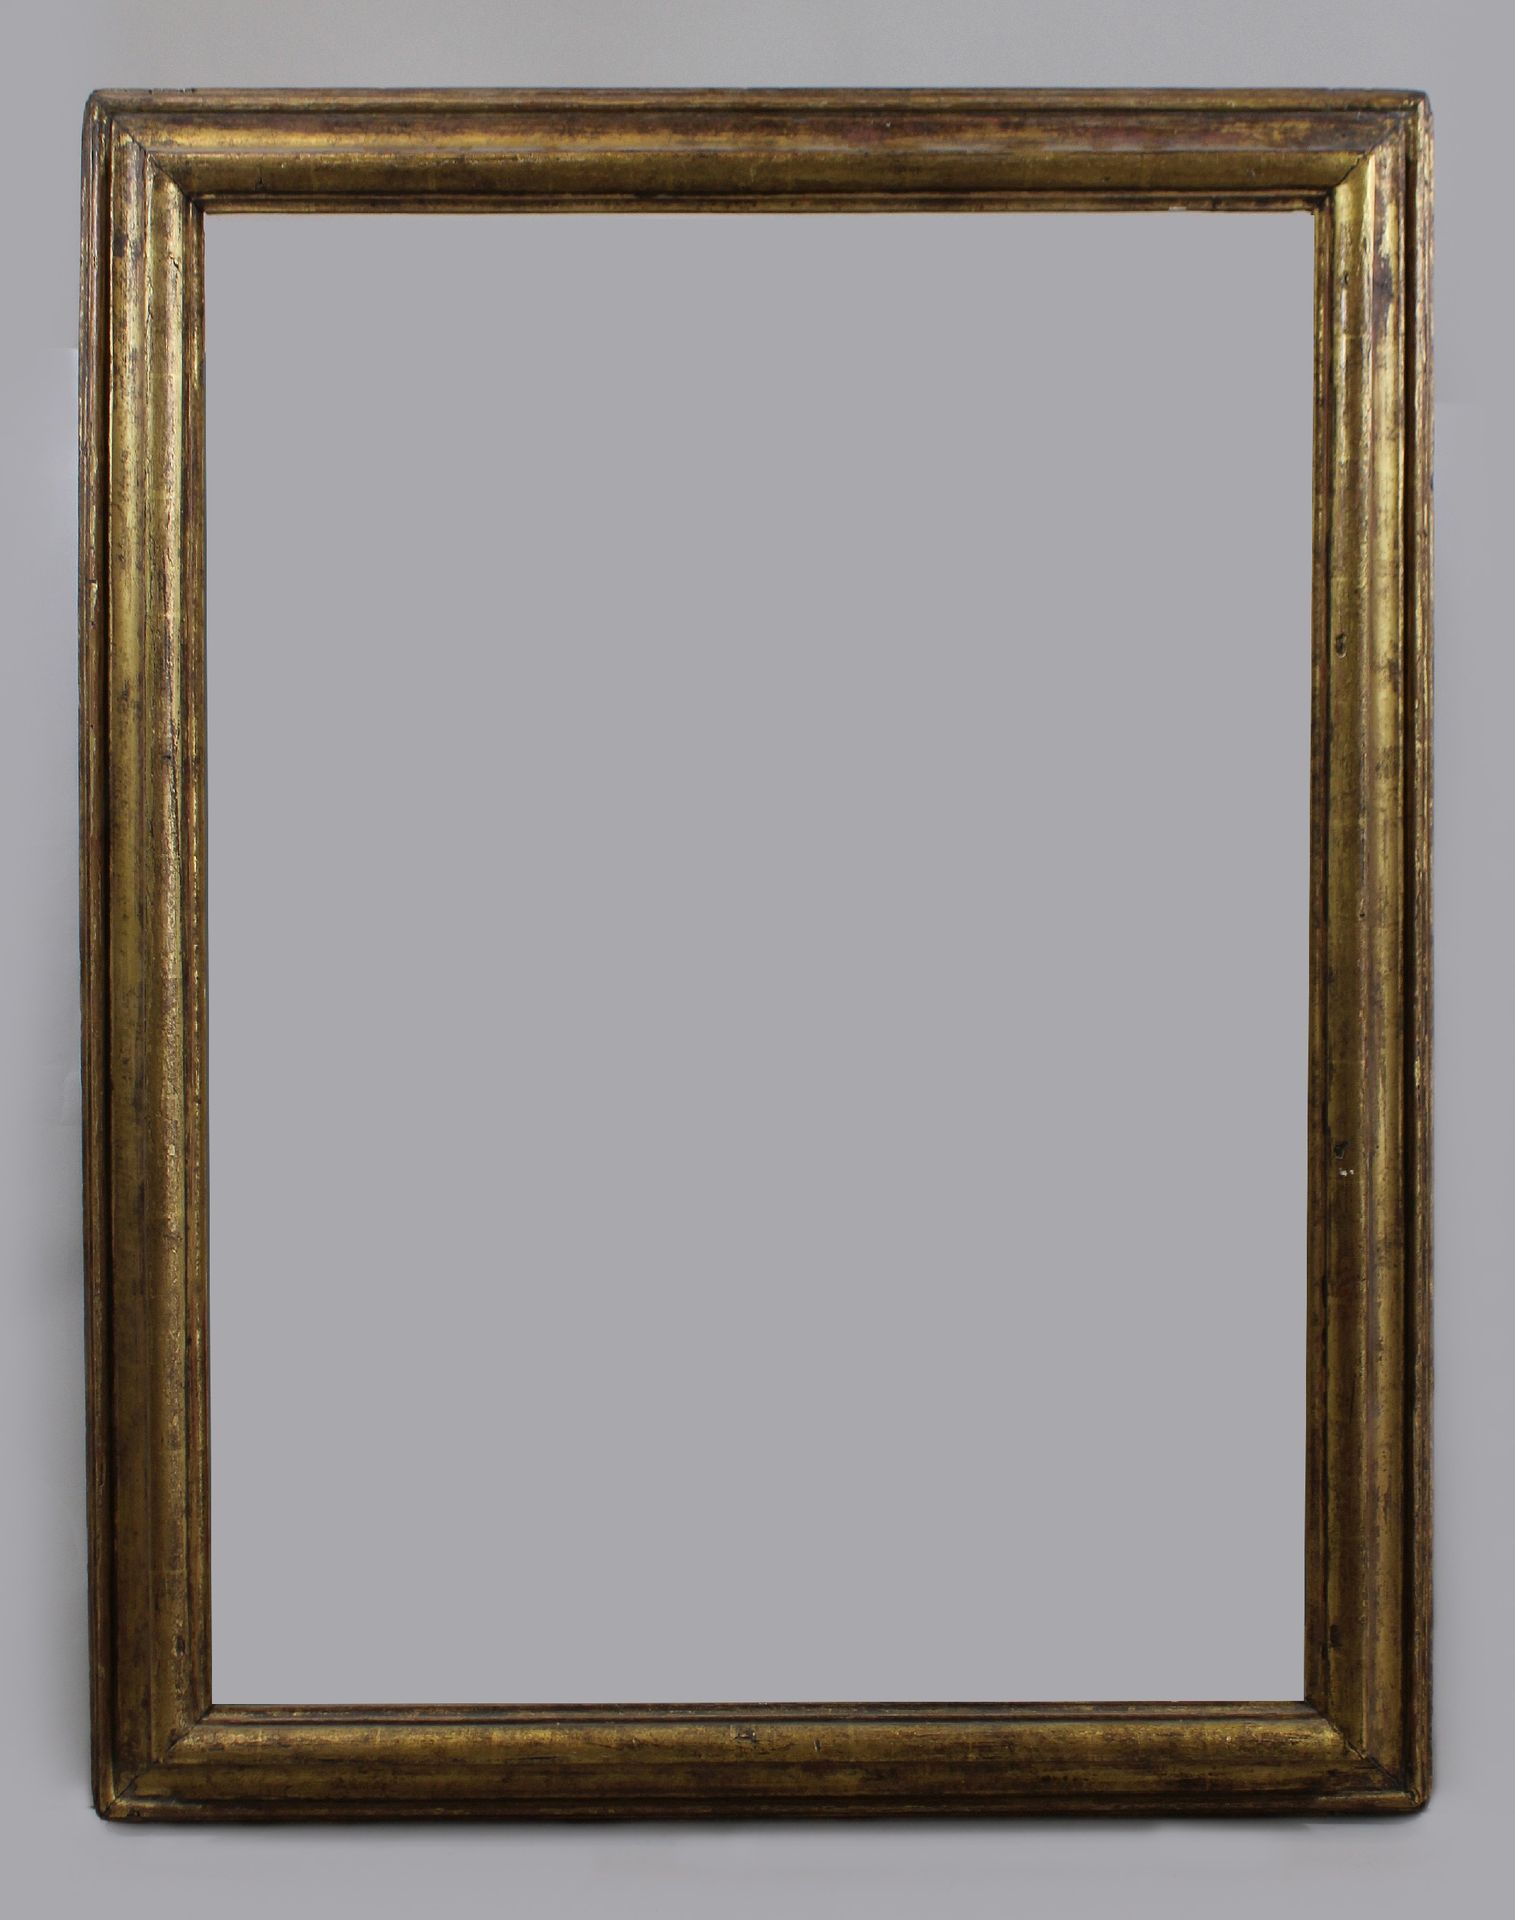 Italienischer Profilrahmen, 18. Jh. Cadre à profil italien, XVIIIe siècle, doré,&hellip;